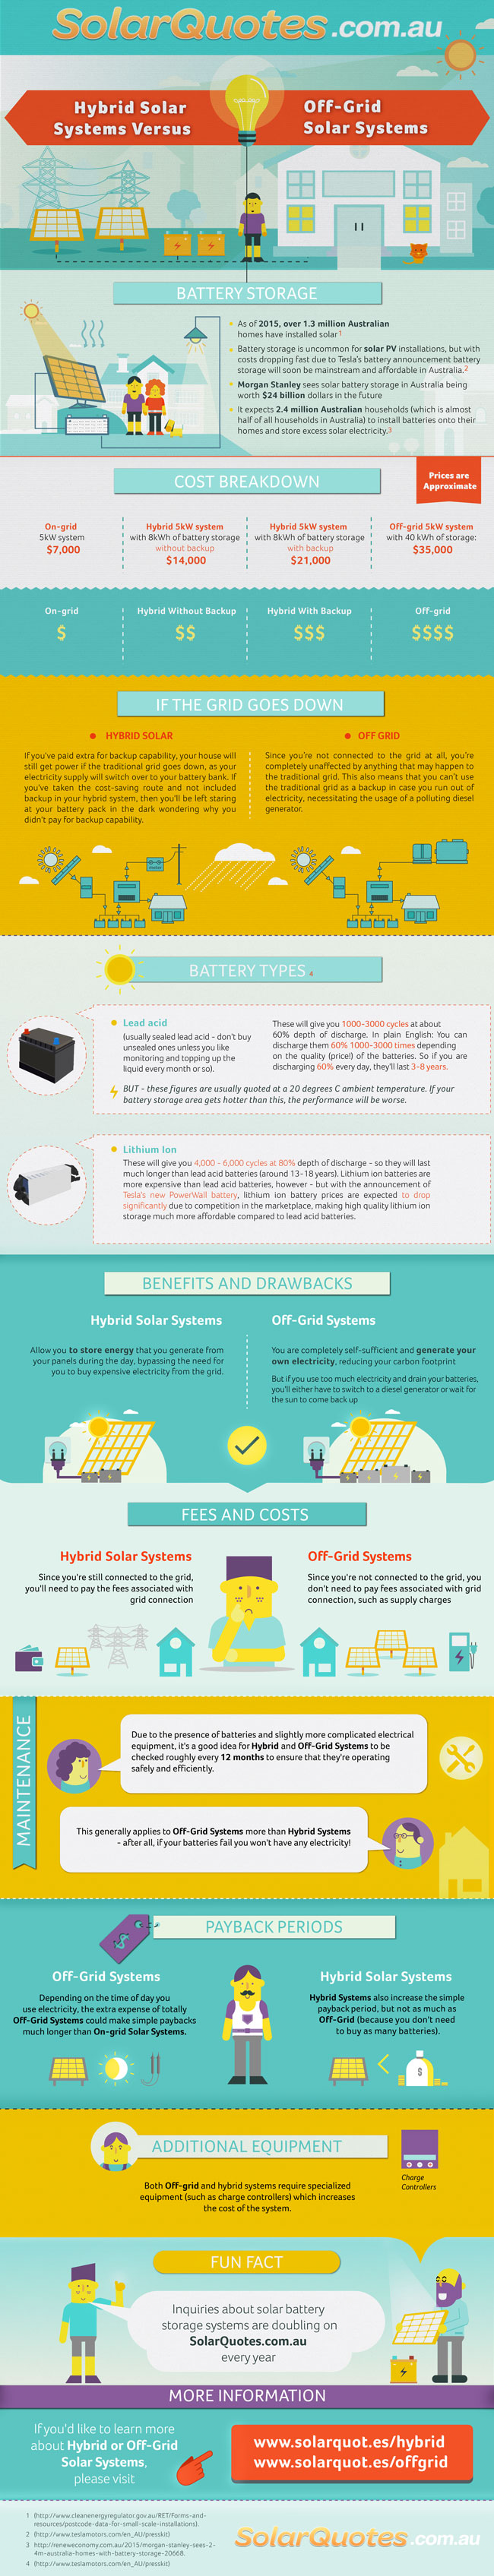 infographic explaining solar battery storage